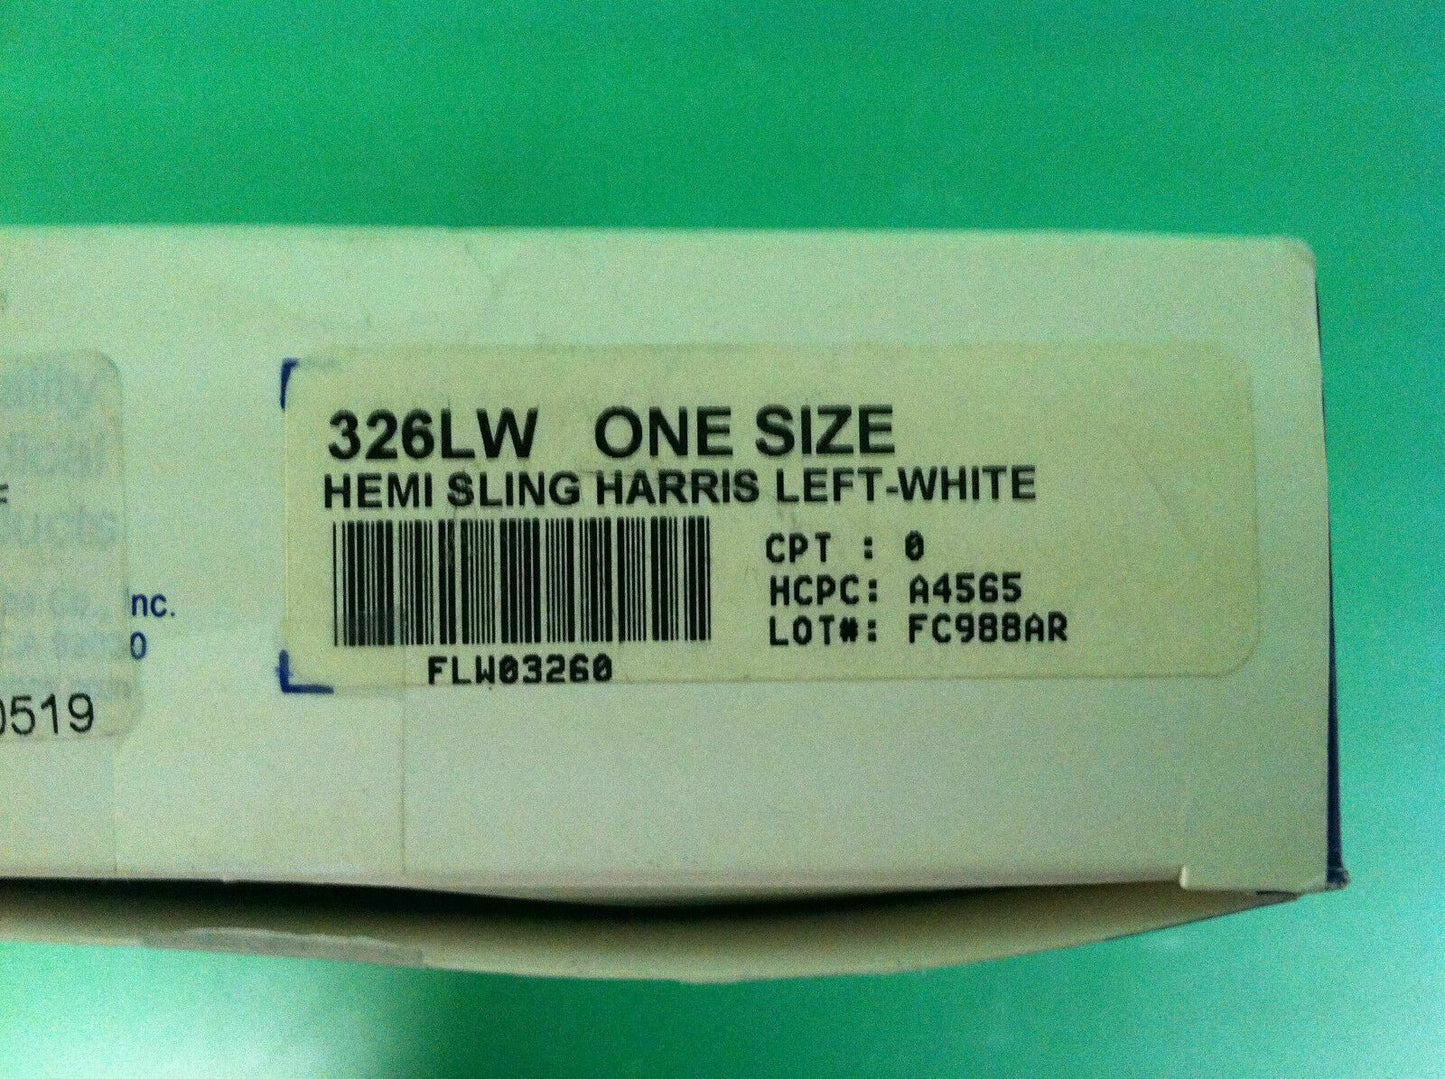 AliMed Inc. Arm Sling Harris White Left (5879) (326LW) #7166